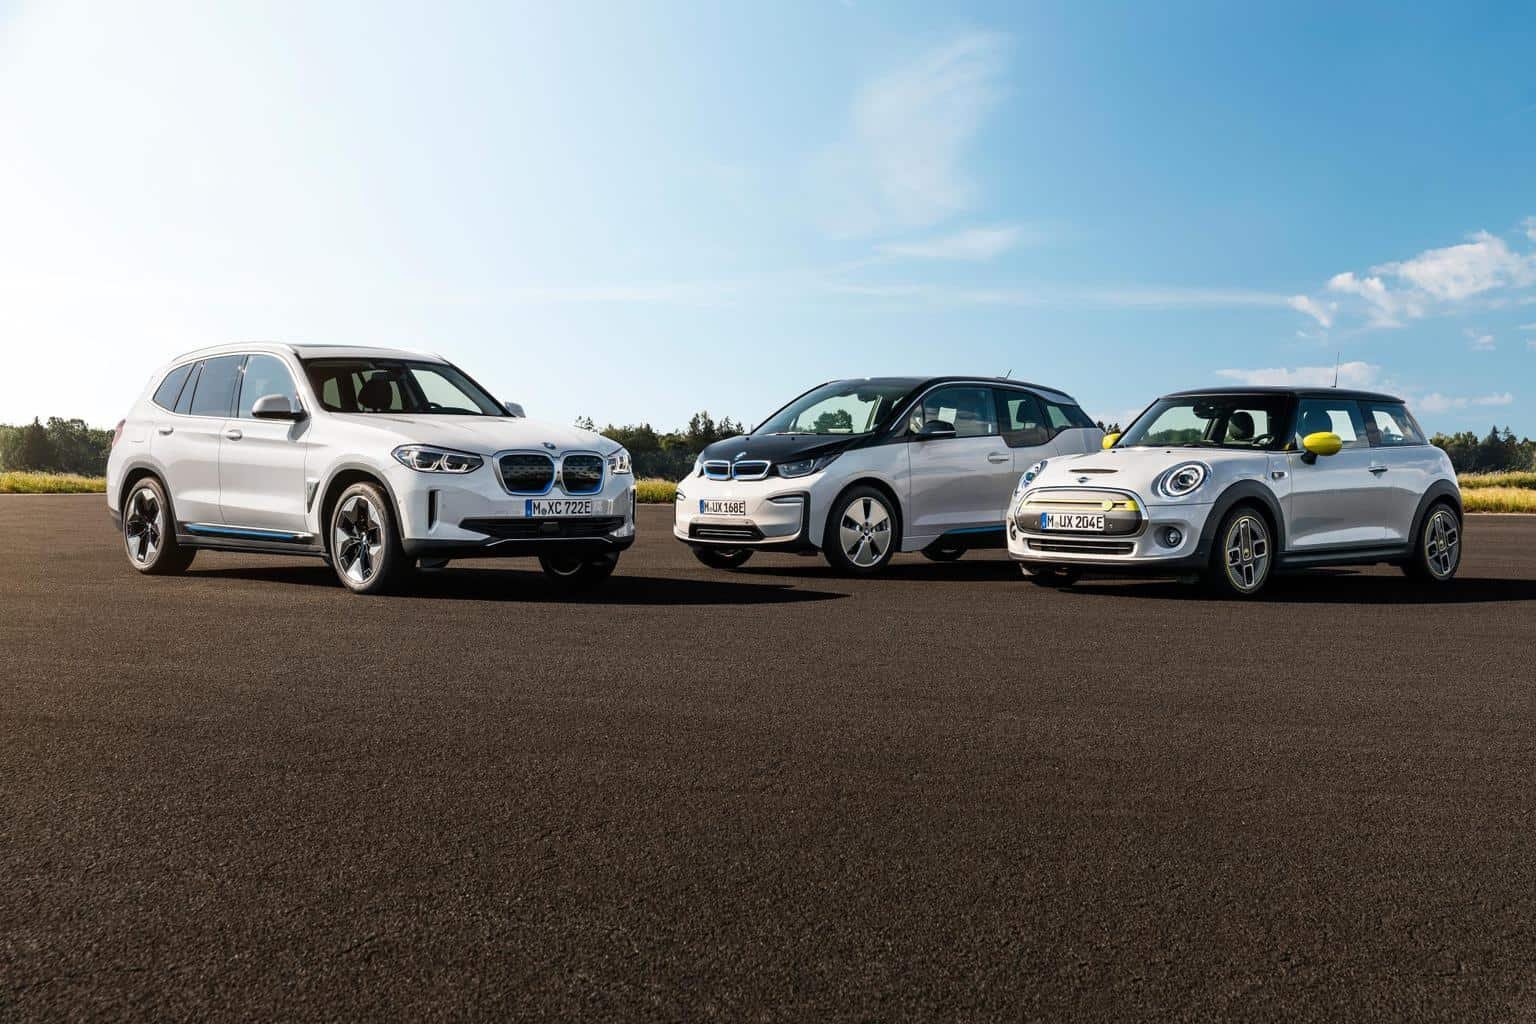 BMW: Mehr als sieben Millionen E-Autos/ Plug-In-Hybride bis 2030